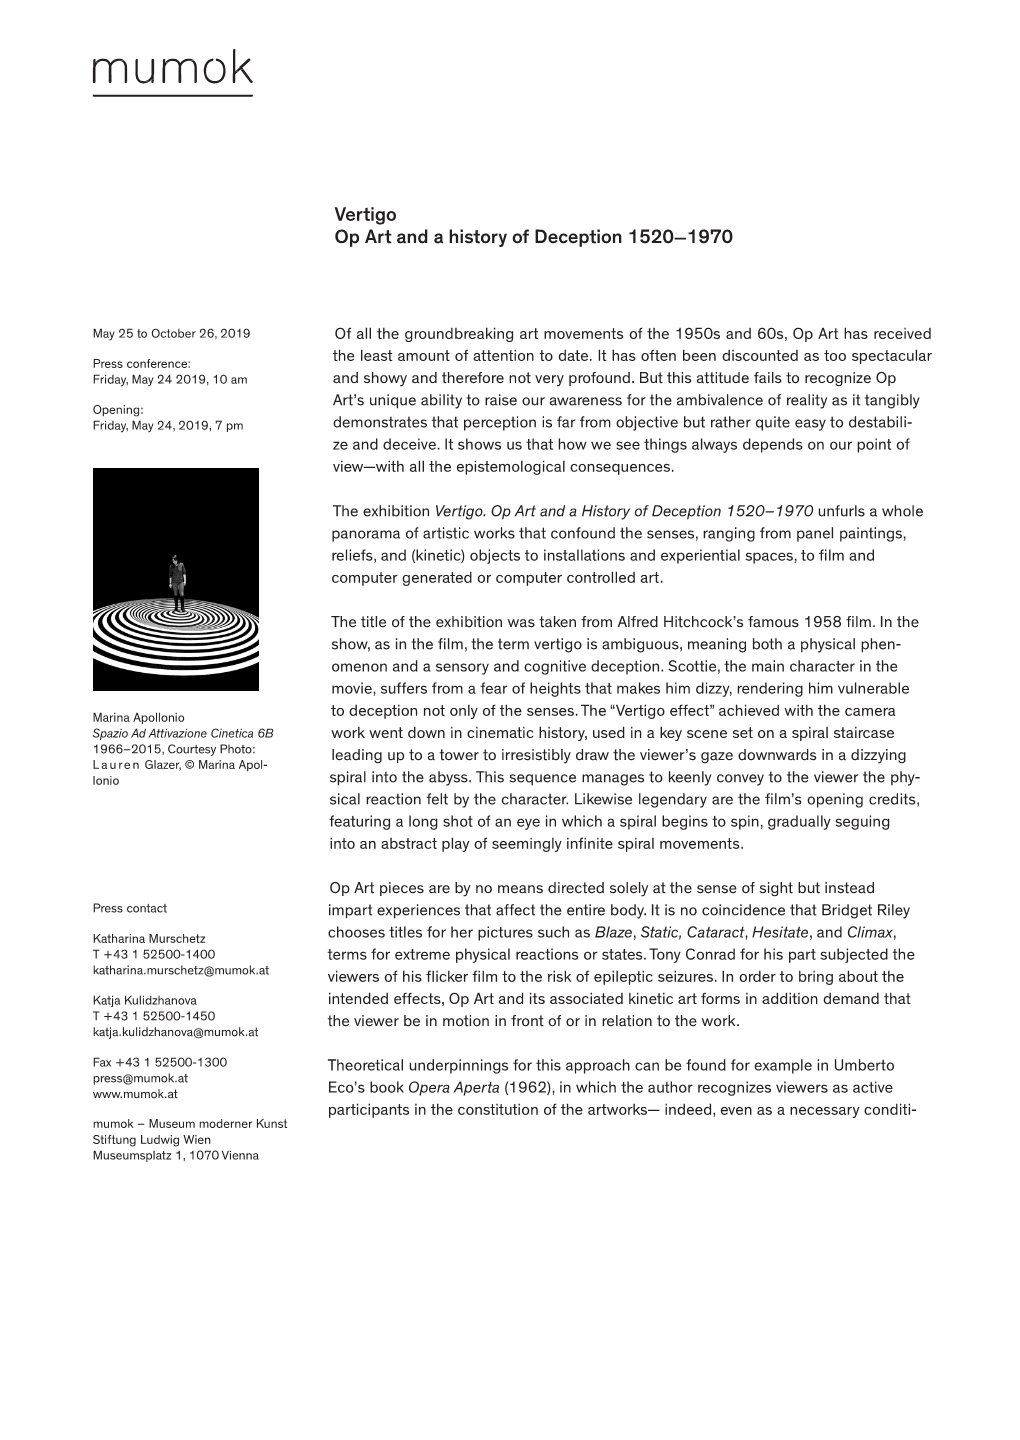 Vertigo Op Art and a History of Deception 1520—1970